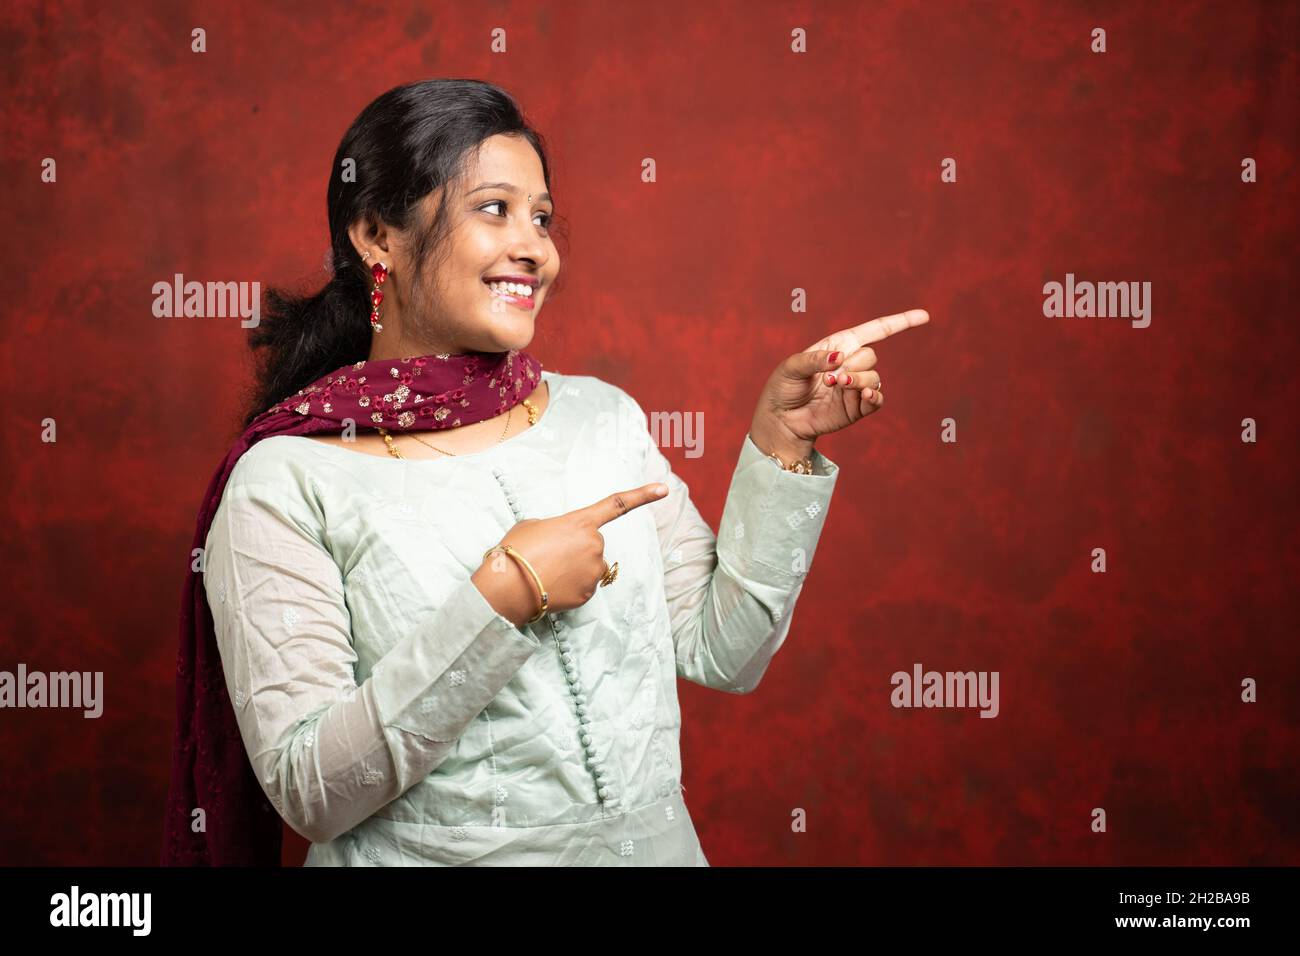 Glücklich lächelnde indische Frau zeigt den Finger auf leeren Raum - Koknept der Anzeige von Angeboten oder Rabatten für Festival-Verkäufe Werbung mit Kopierraum. Stockfoto